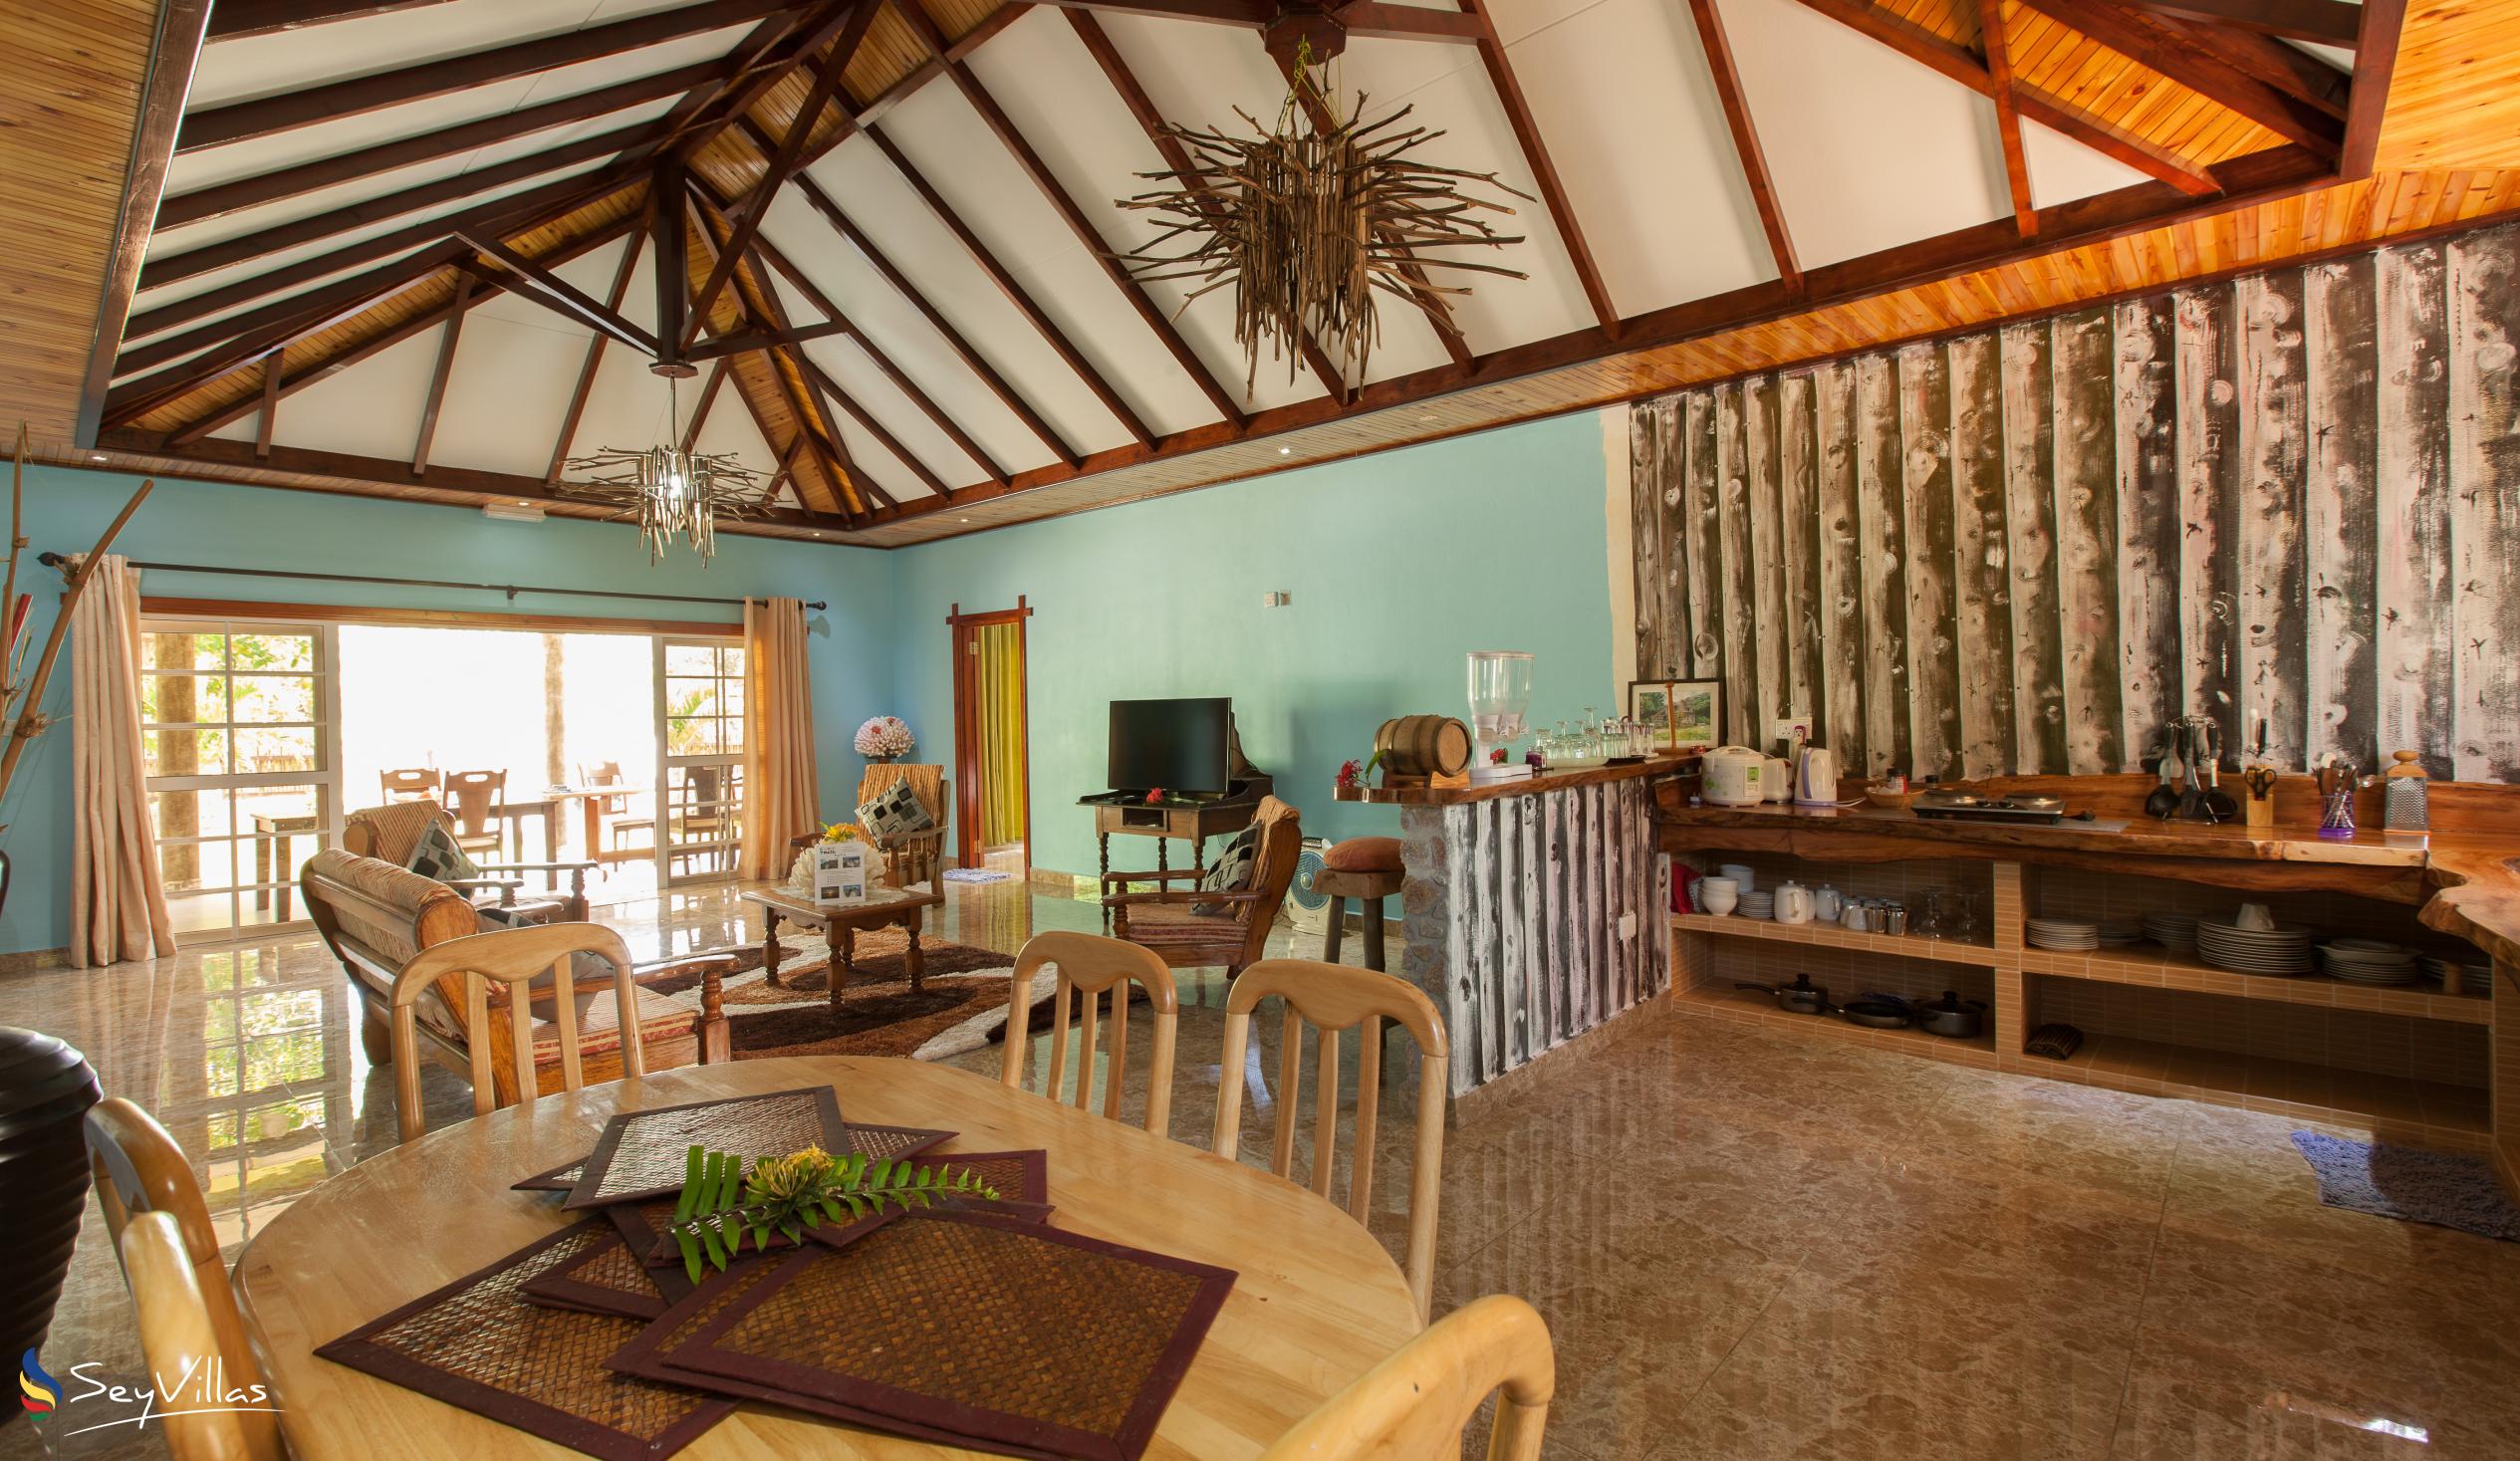 Photo 32: Elje Villa - Indoor area - La Digue (Seychelles)